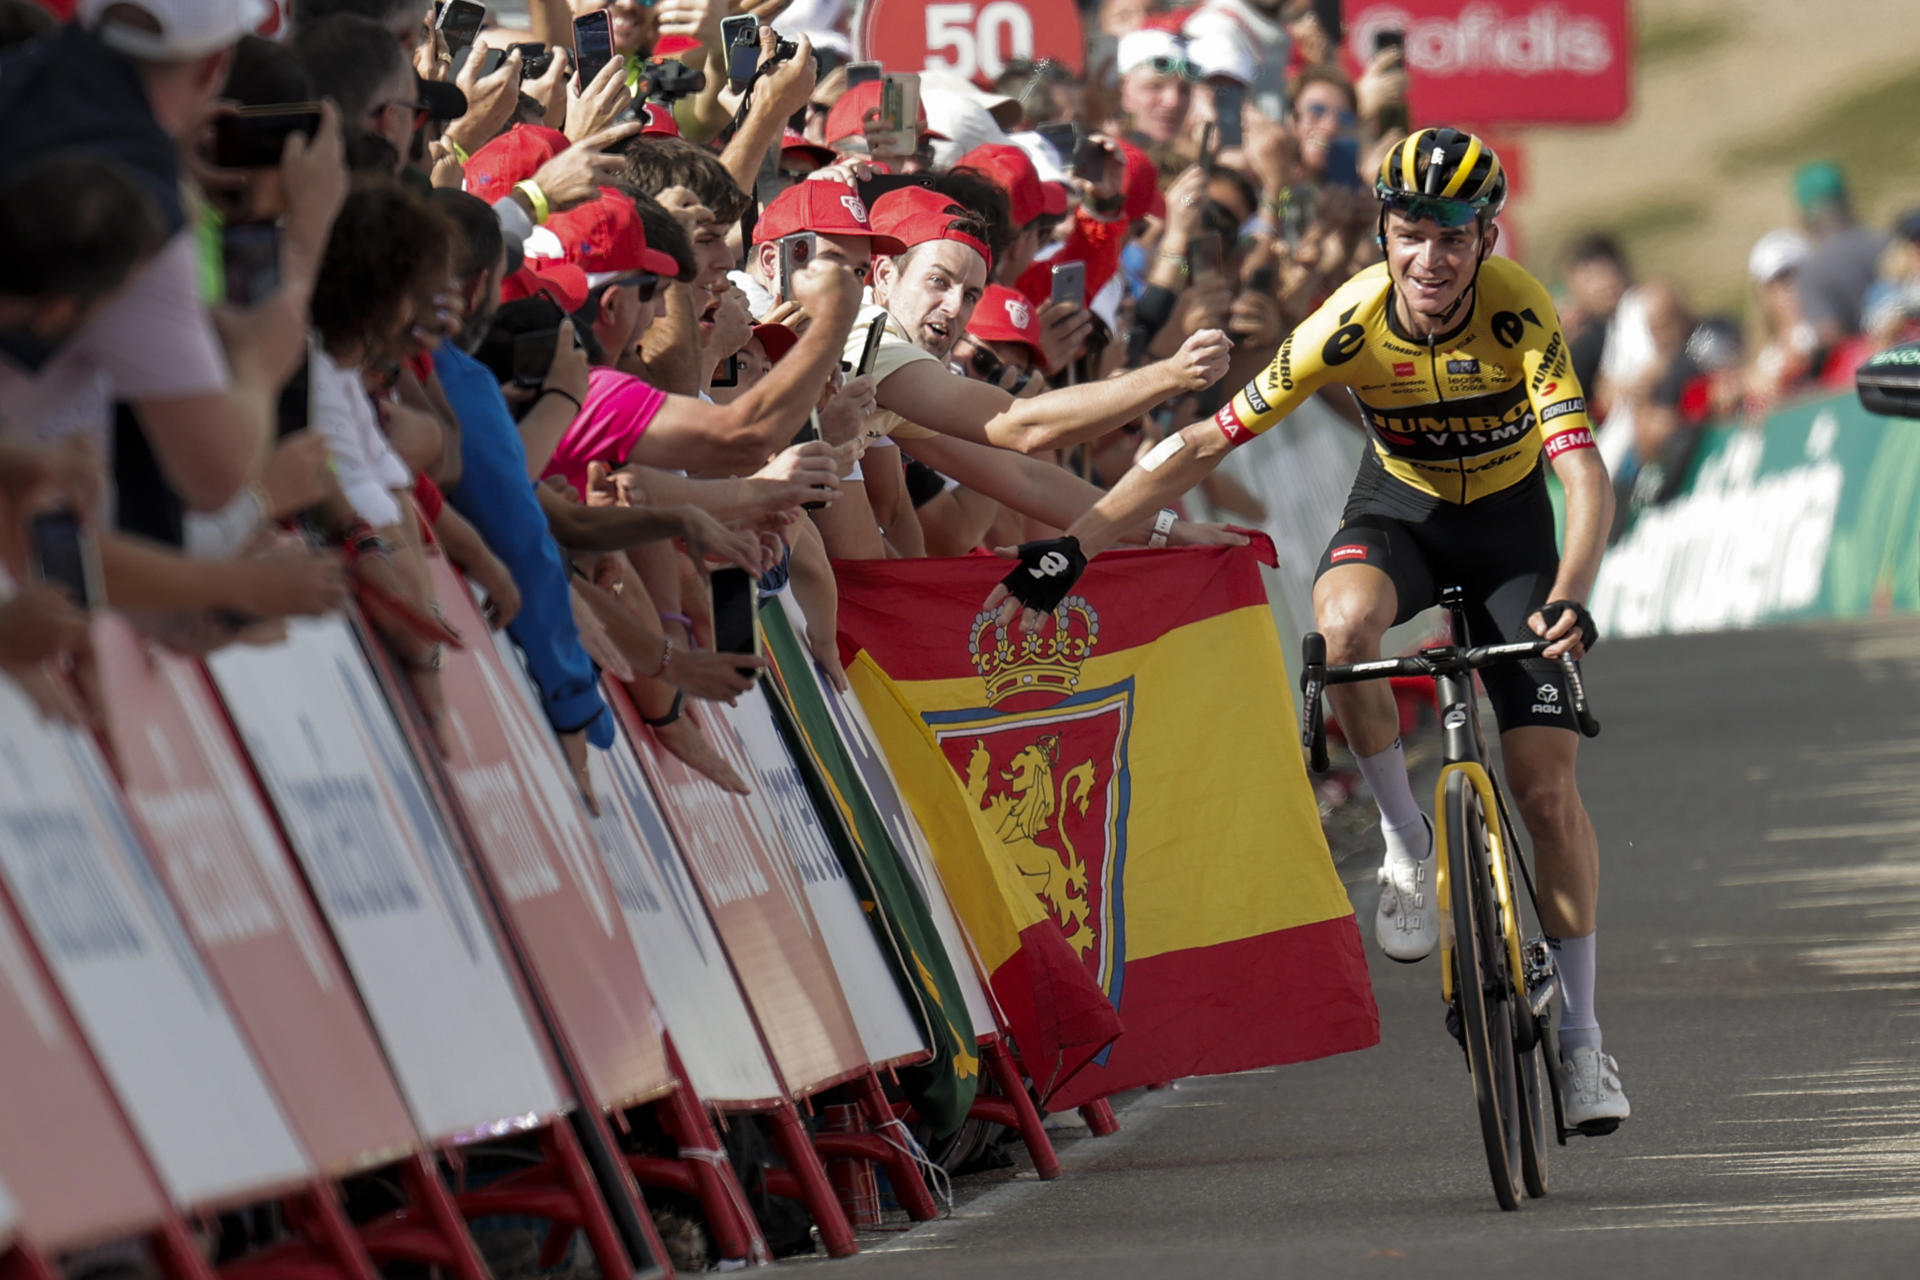 El ciclista estadounidense Sepp Kuss del equipo Jumbo-Visma gana la sexta etapa de la Vuelta a España disputada entre la localidad castellonense de La Vall d'Uixo y el Pico del Buitre en el Observatorio Astrofísico de Jalambre, de 183,1 kilómetros de recorrido. EFE/ Manuel Bruque